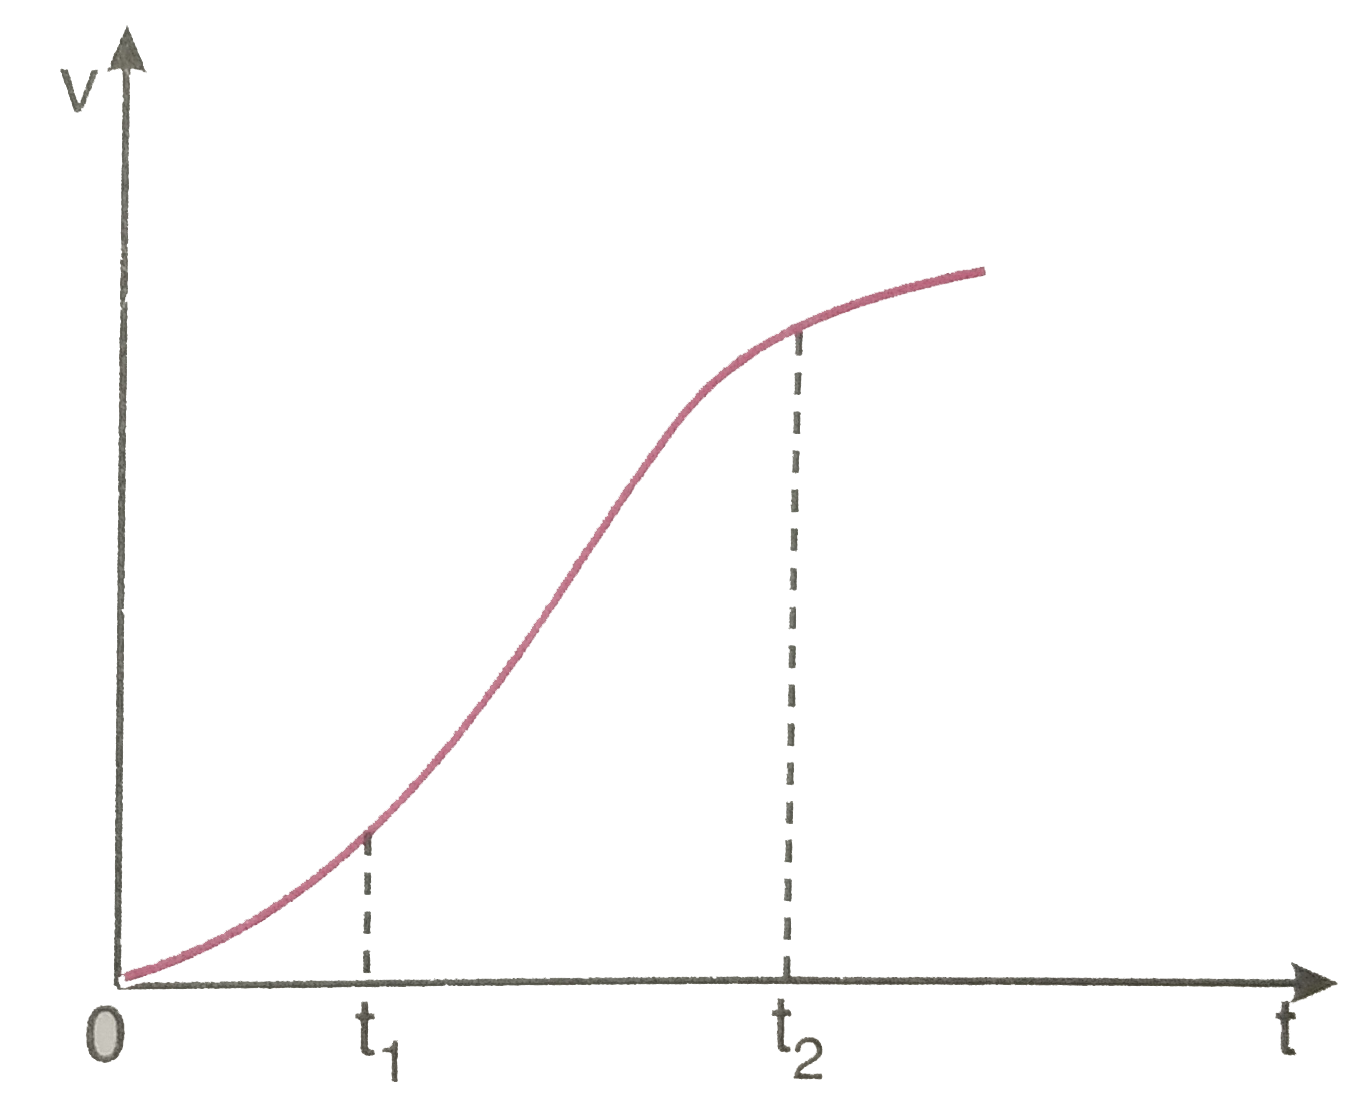 एक विमीय गति में किसी कण का वेग - समय ग्राफ चित्र 3.62 में दिखाया गया है नीचे दिए सूत्रों में t(1) से t(2) तक के समय अंतराल की अवधि में कण की गति का वर्णन करने के लिए कौन-से सूत्र सही है   v(t(2))=v(t(1))+a(t(2)-t(1))